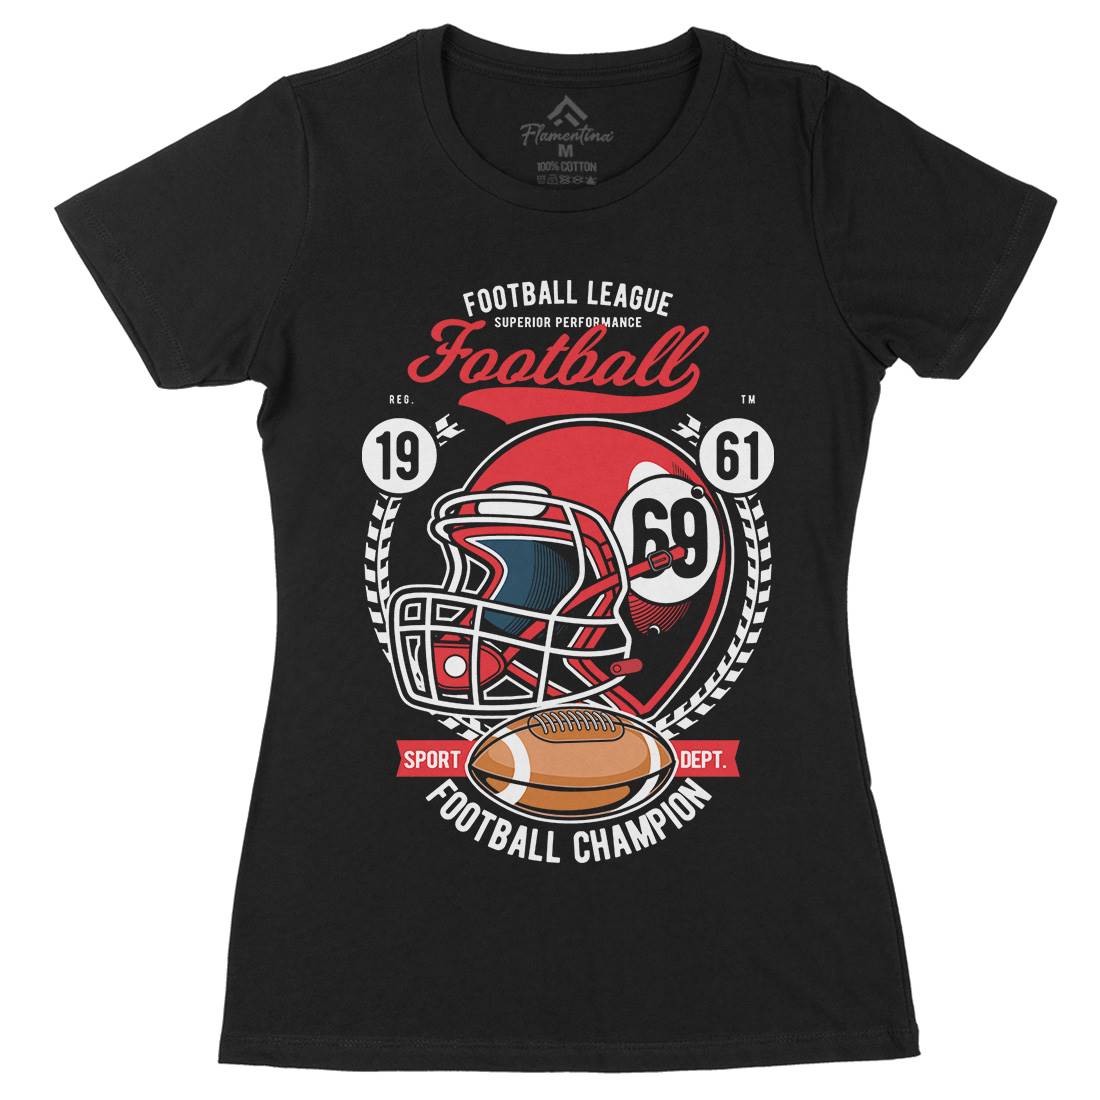 Football League Helmet Womens Organic Crew Neck T-Shirt Sport C362